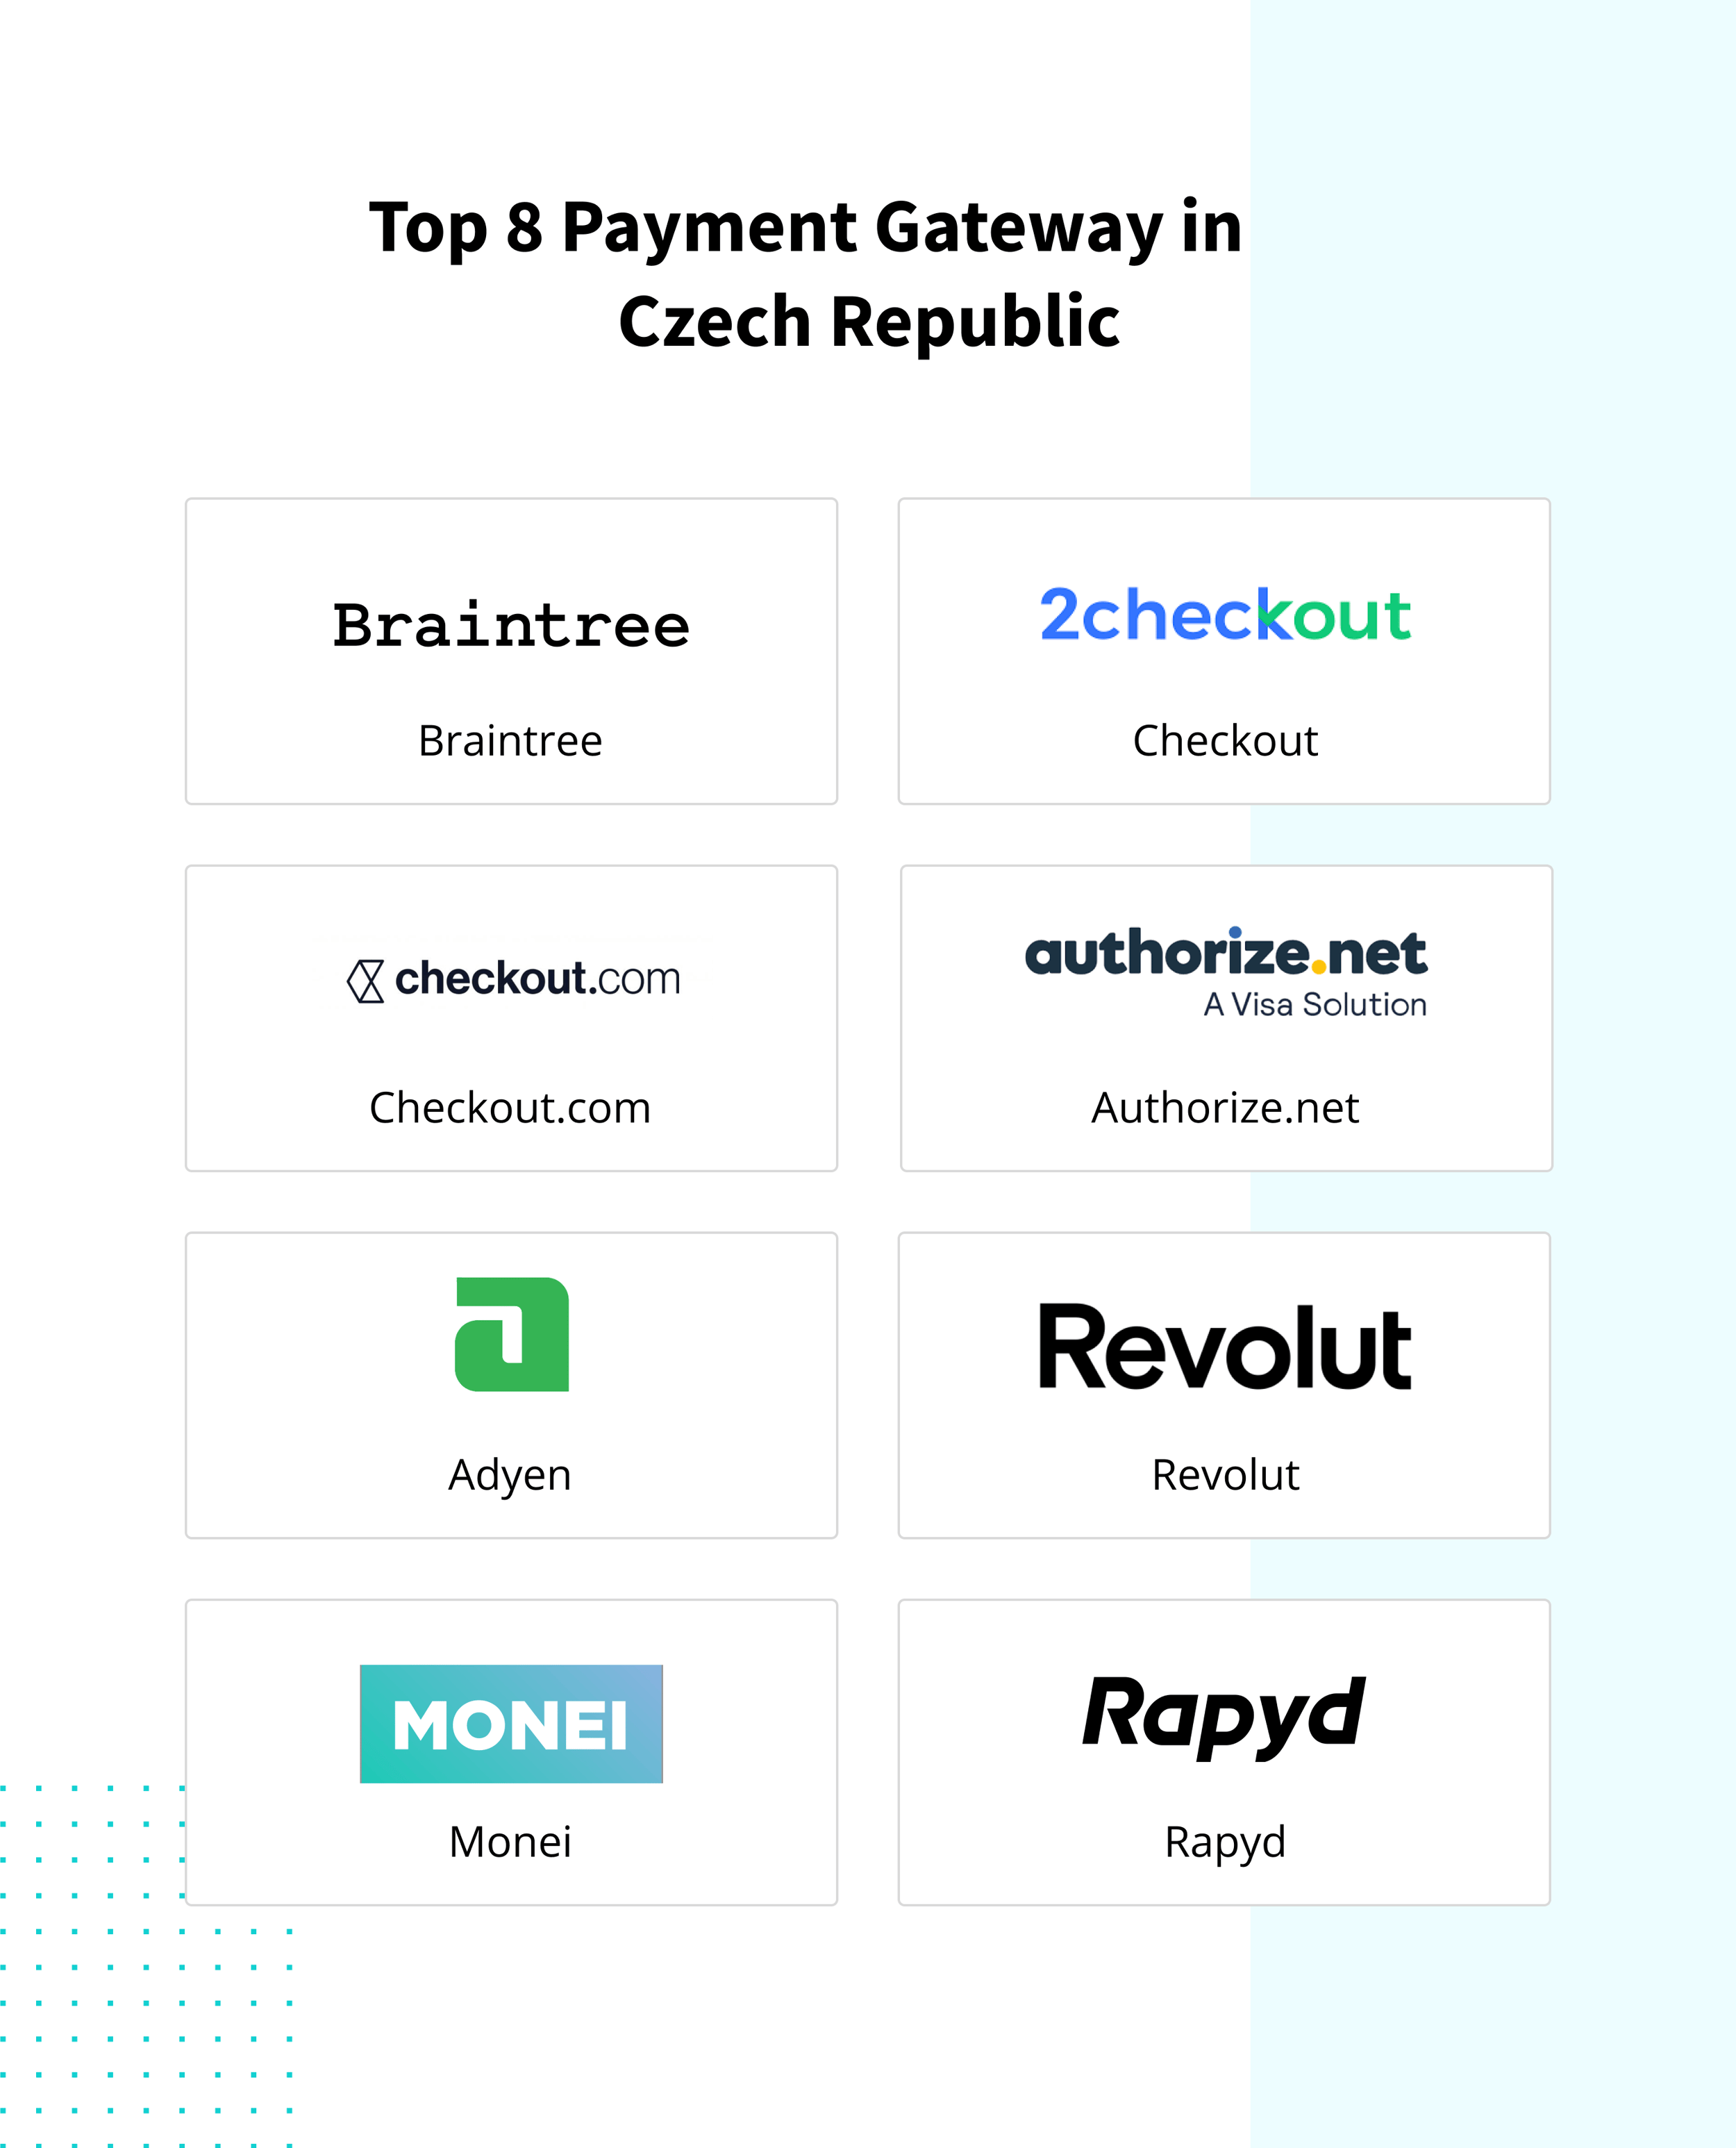 Top 8 Payment Gateways 